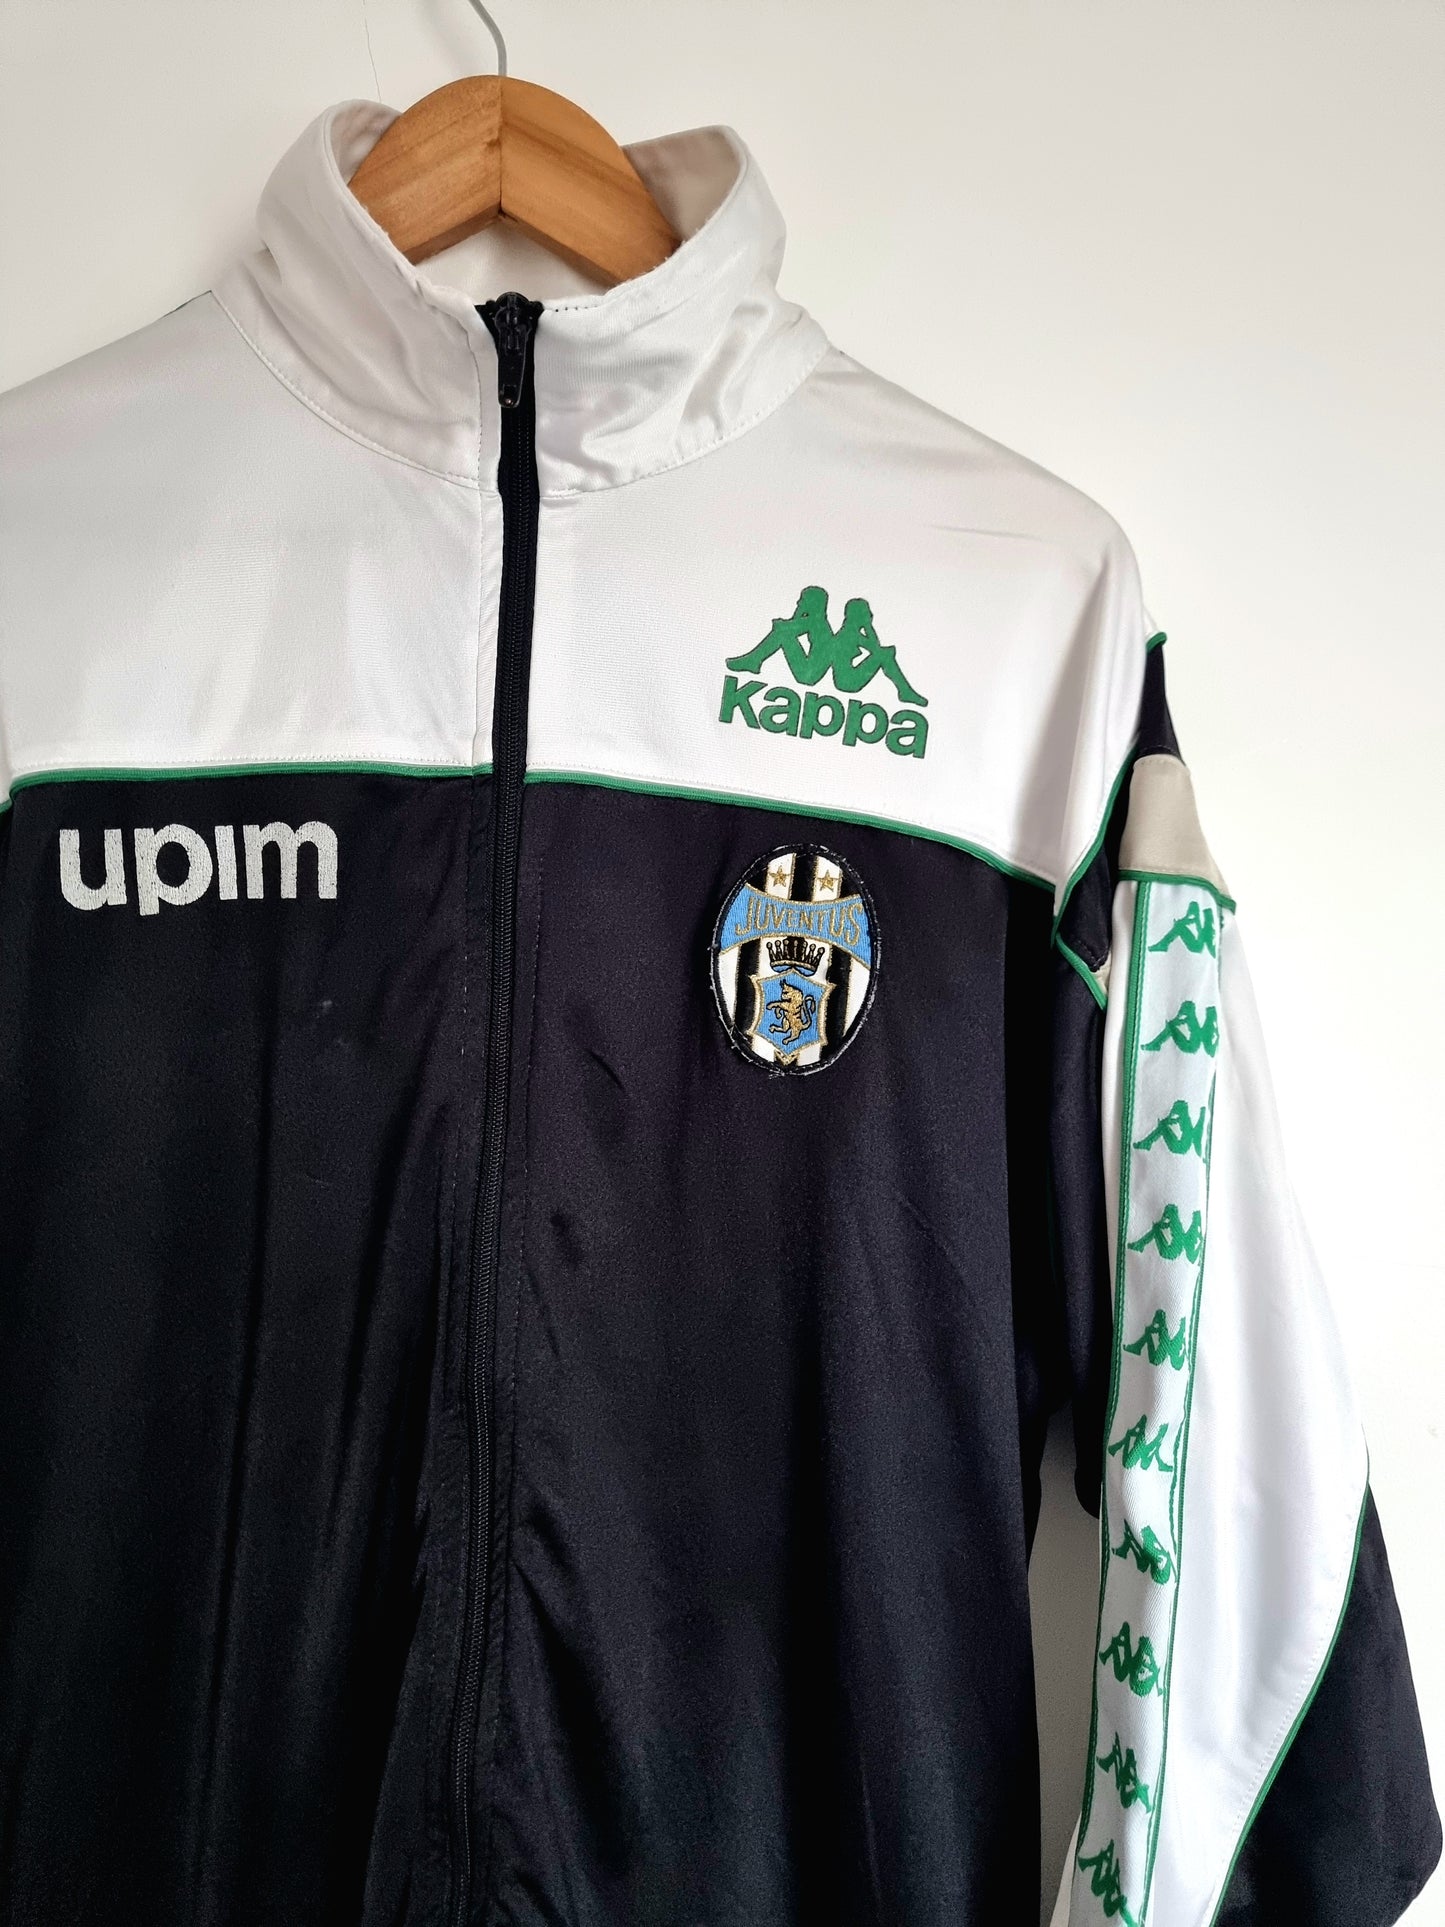 Kappa Juventus 90/91 Track Jacket Large